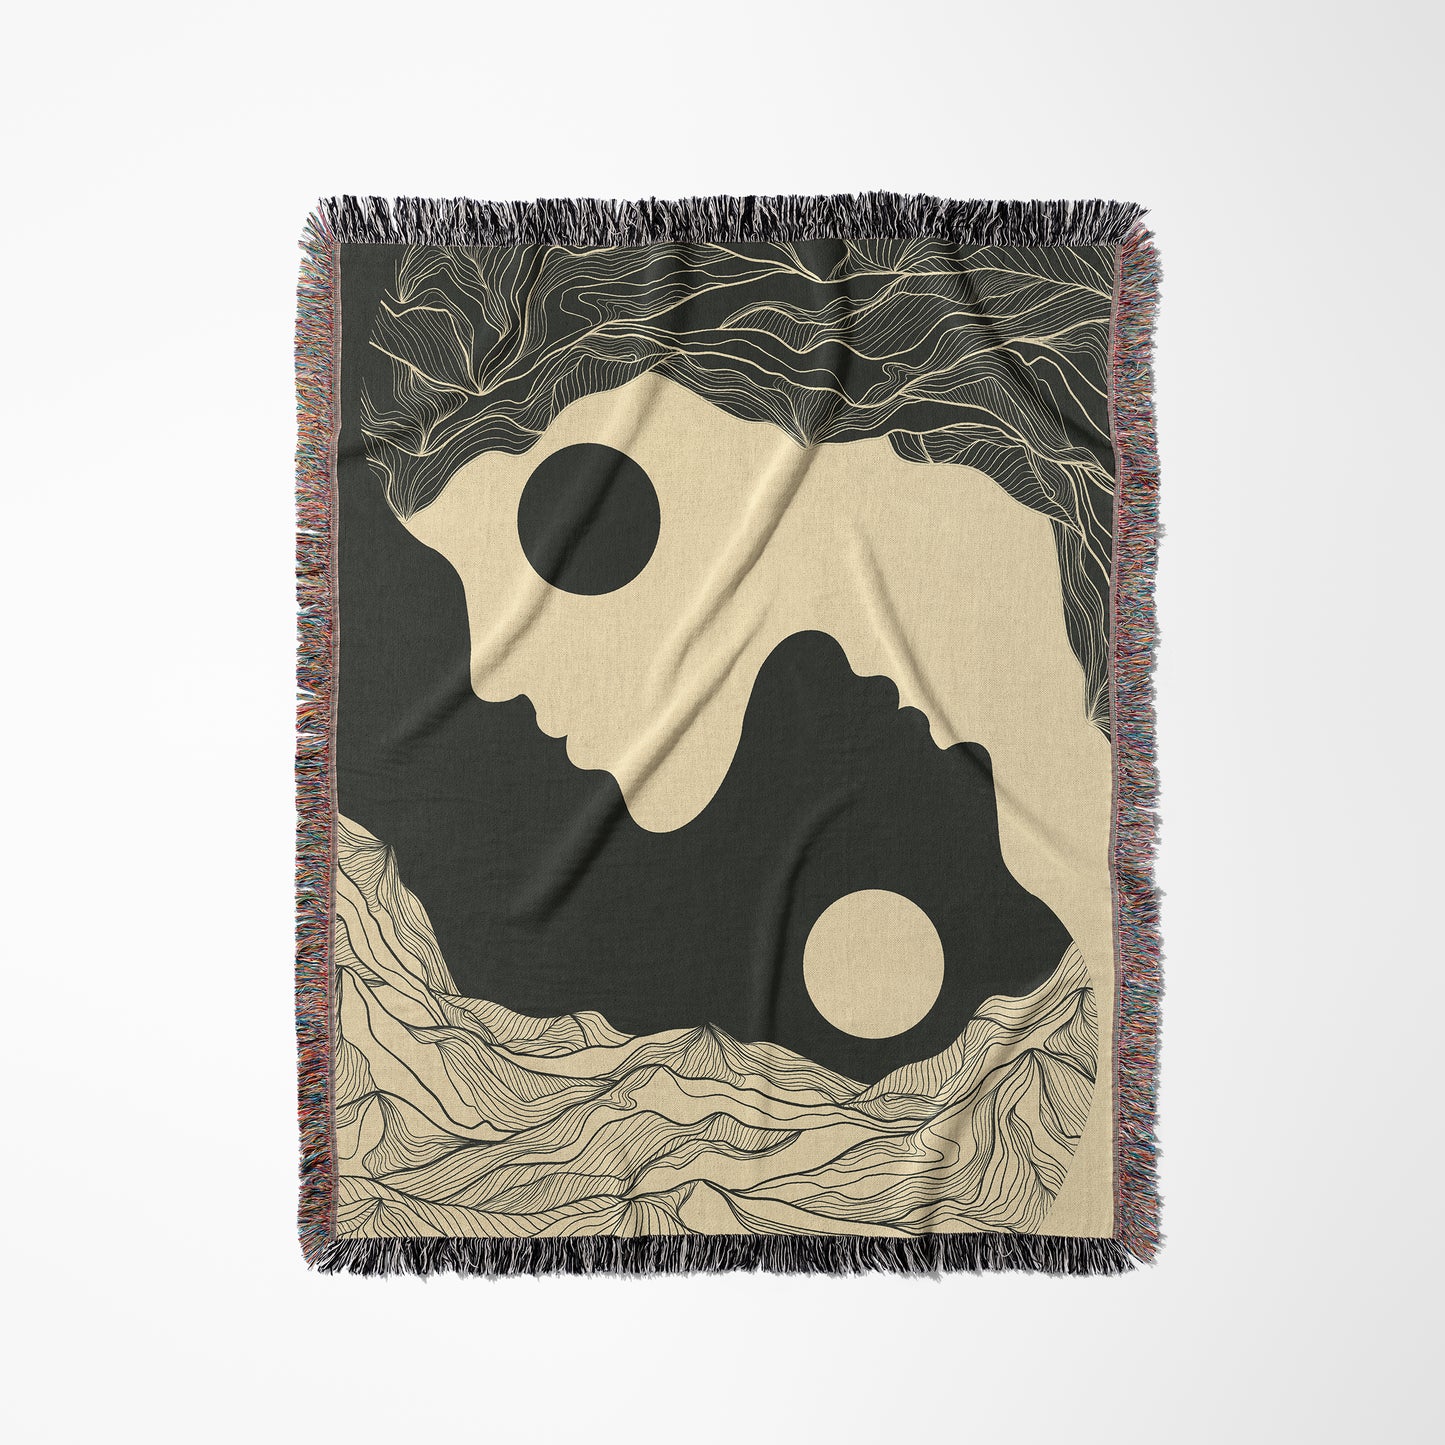 Yin Yang Woven Hanging Blanket